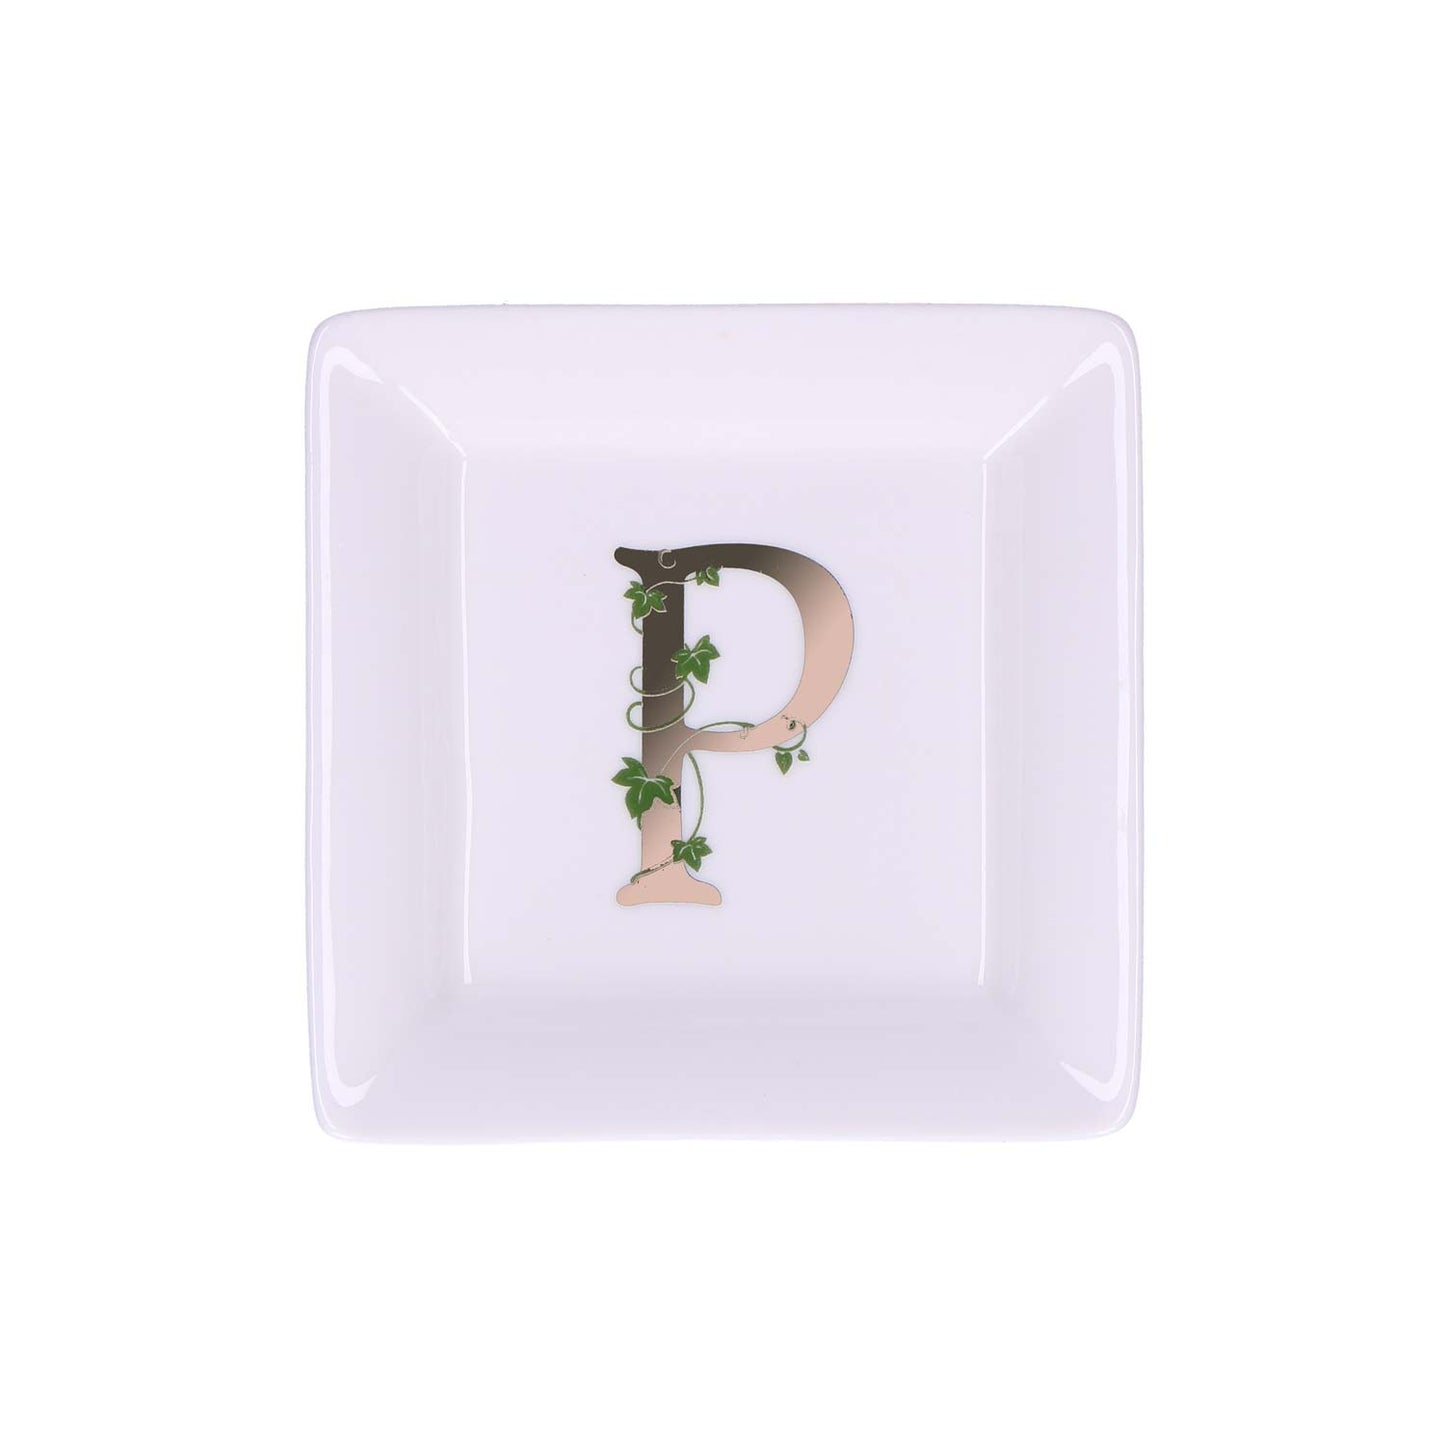 Piattino quadrato in porcellana "Adorato" con iniziale decorata. Dimensioni: cm 10 x 10 x h1,5 Lavare a mano.